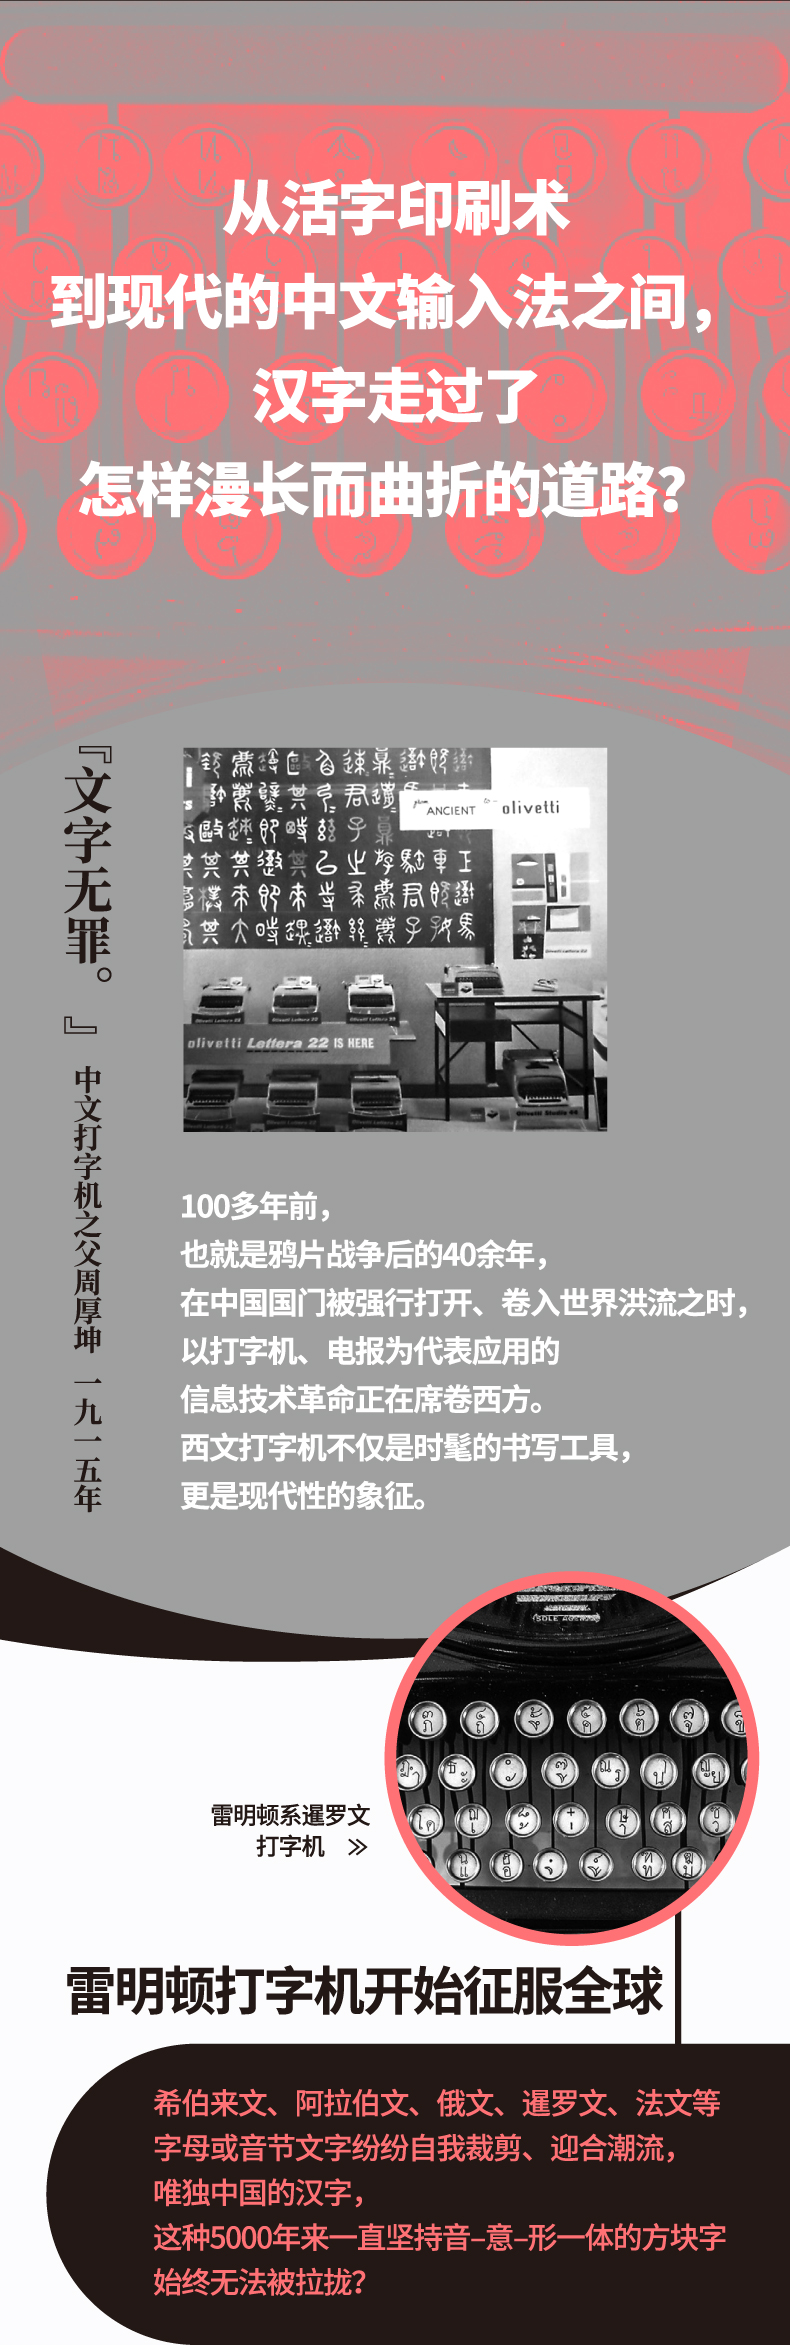 中文打字机-新-长海报-2.jpg